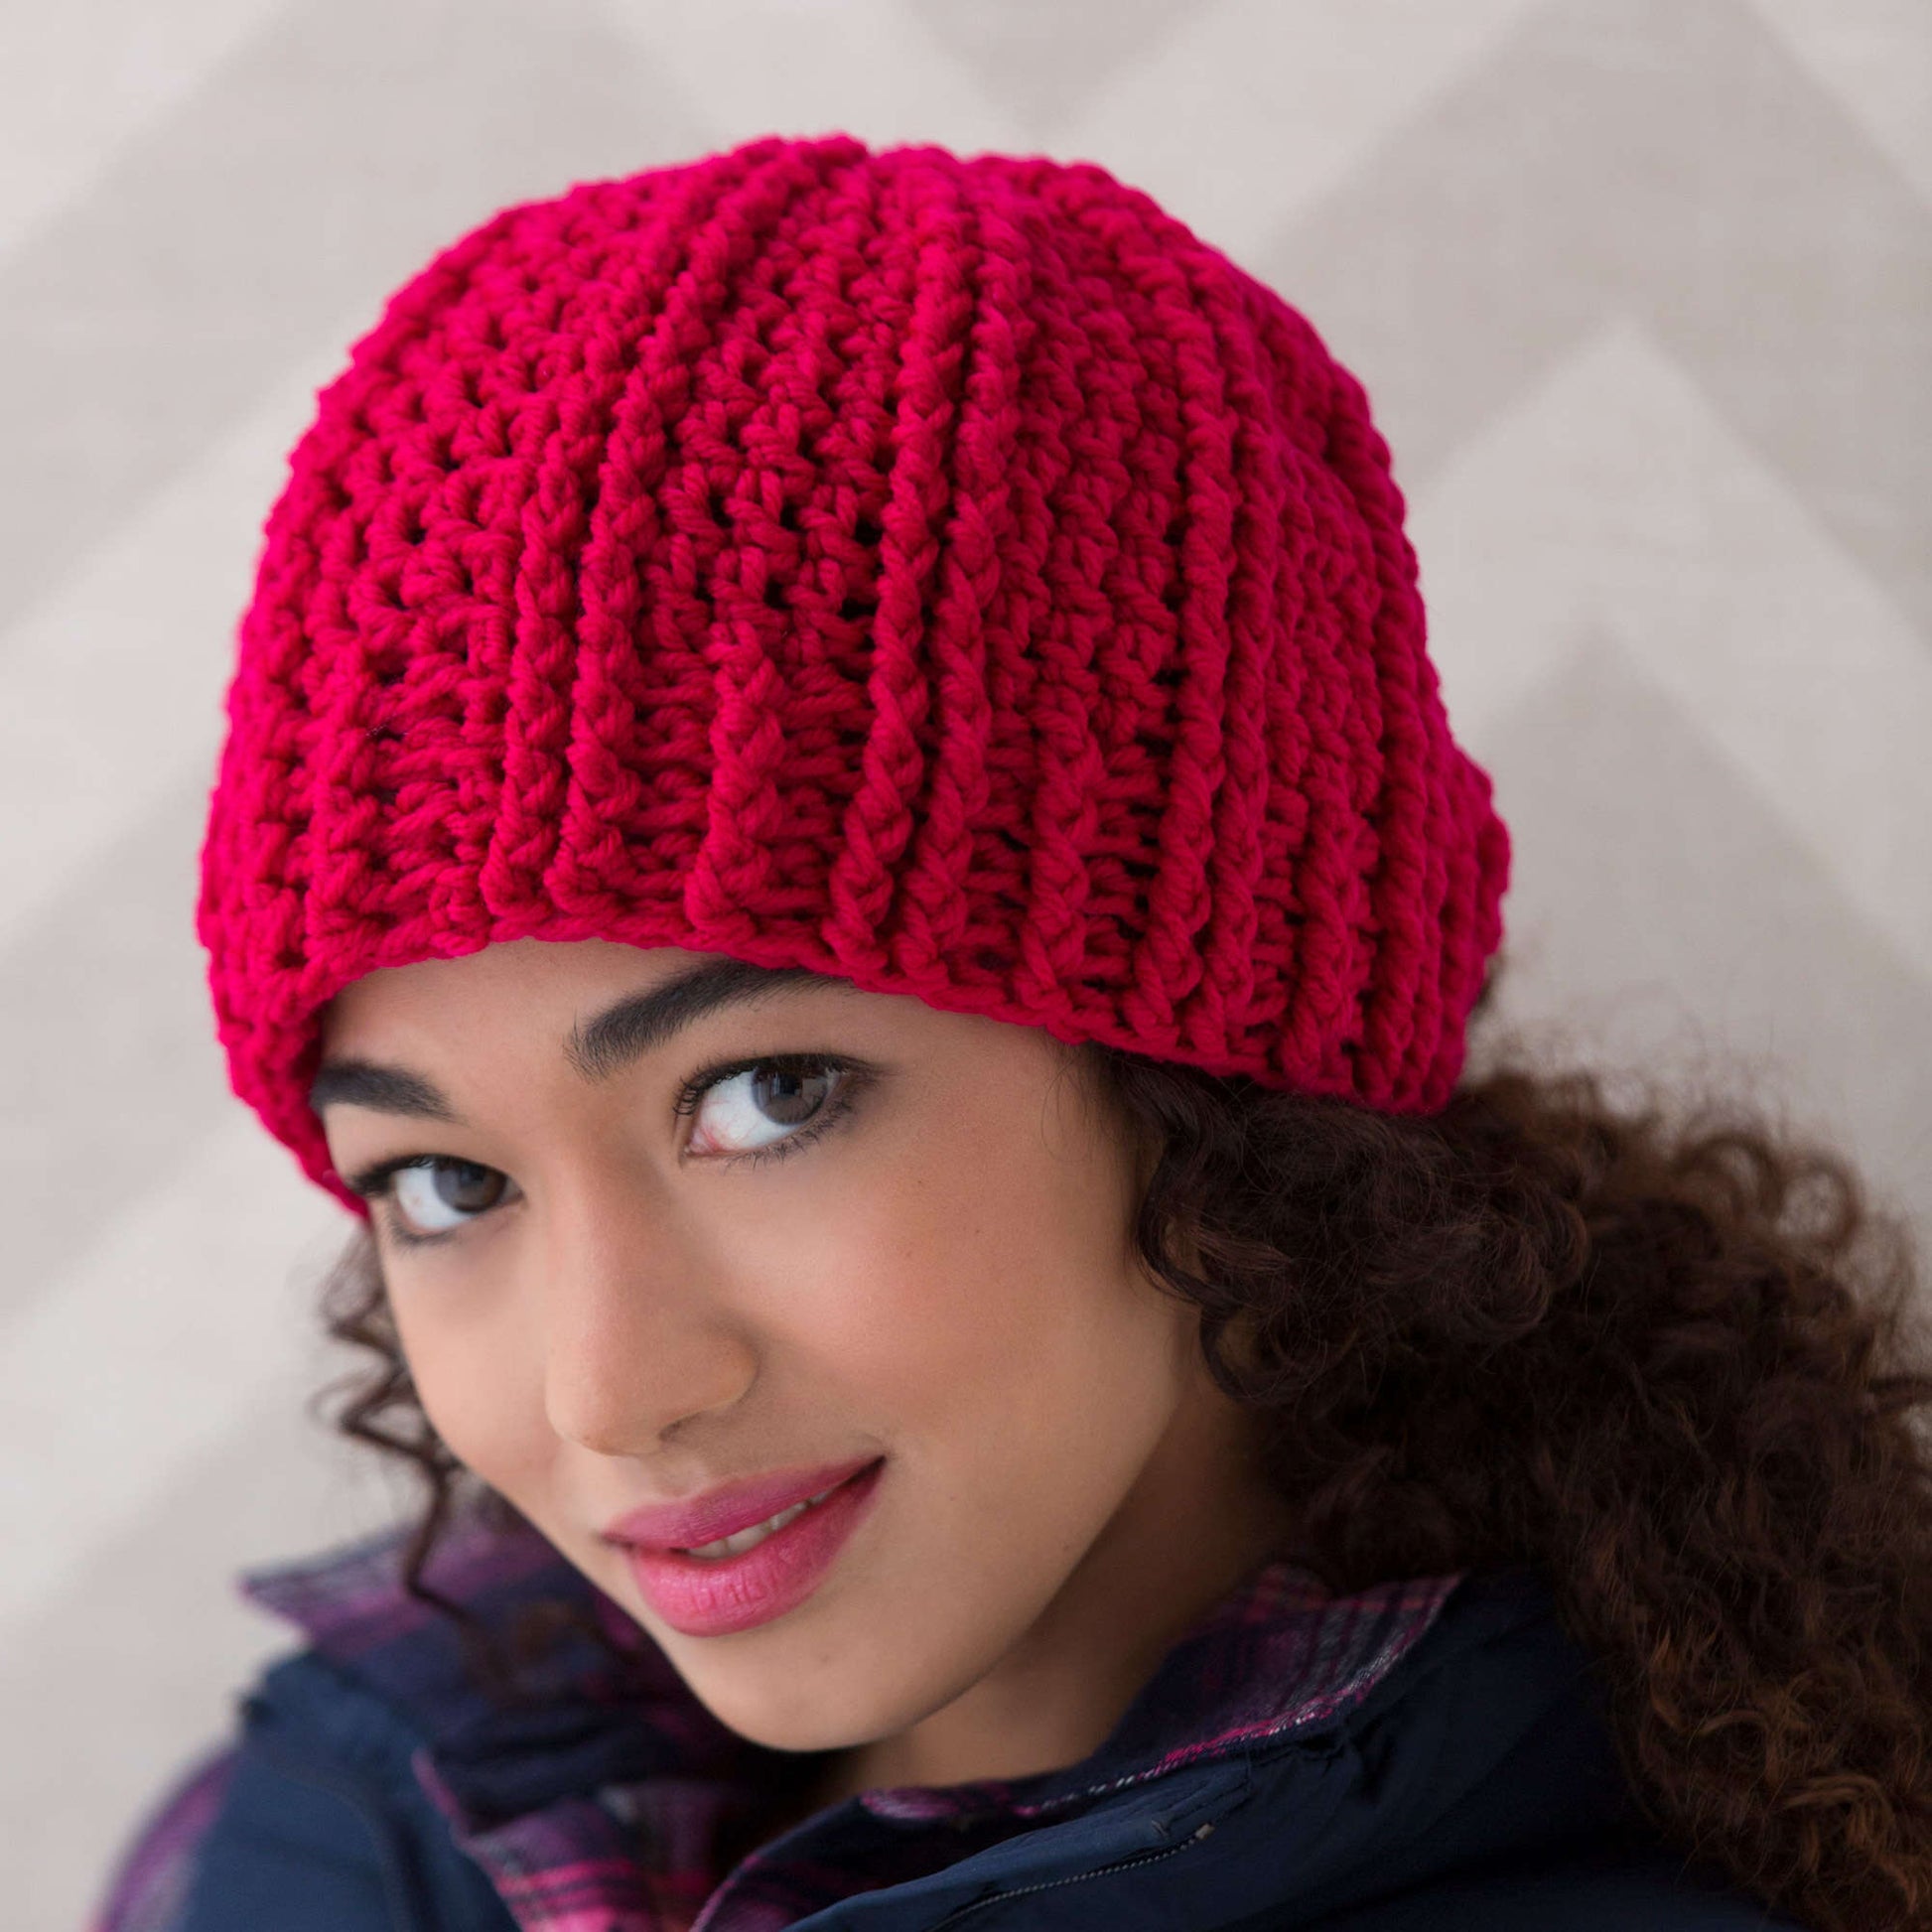 Red Heart Ridged Crochet Hat Pattern